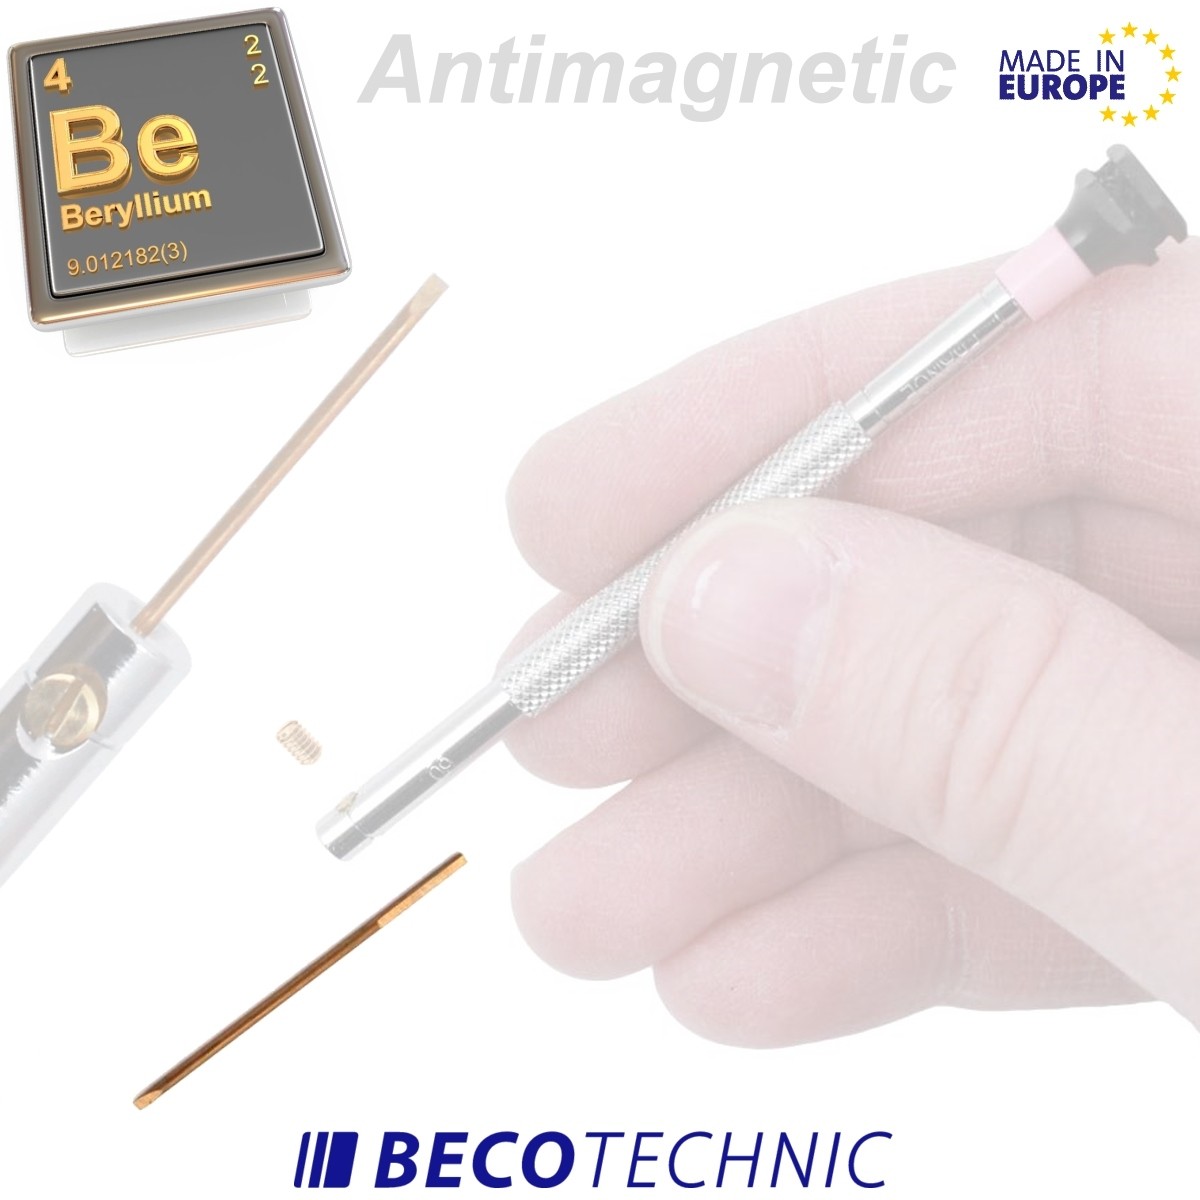 9 Ersatzklingen 0,5 - 3,0mm aus Beryllium für Uhrmacherschraubendreher.  Antimagnetische Uhrmacherschraubendreher Klingen für Uhrwerk-Montage